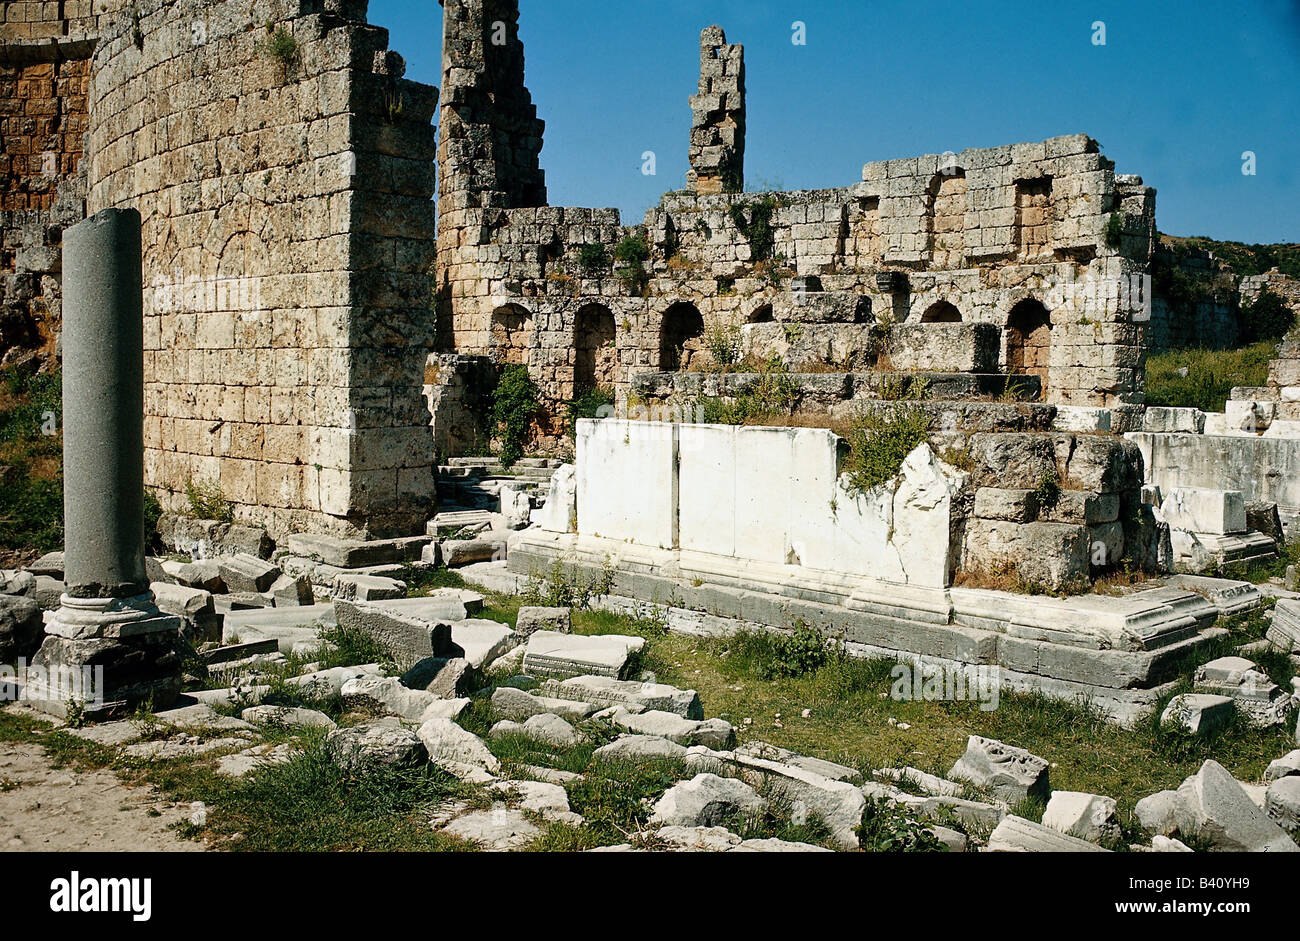 Geografia / viaggio, Turchia, Perge, basilica bizantina, rovine, scavi, antichità, Cappadocia, impero bizantino, chiesa, , Foto Stock